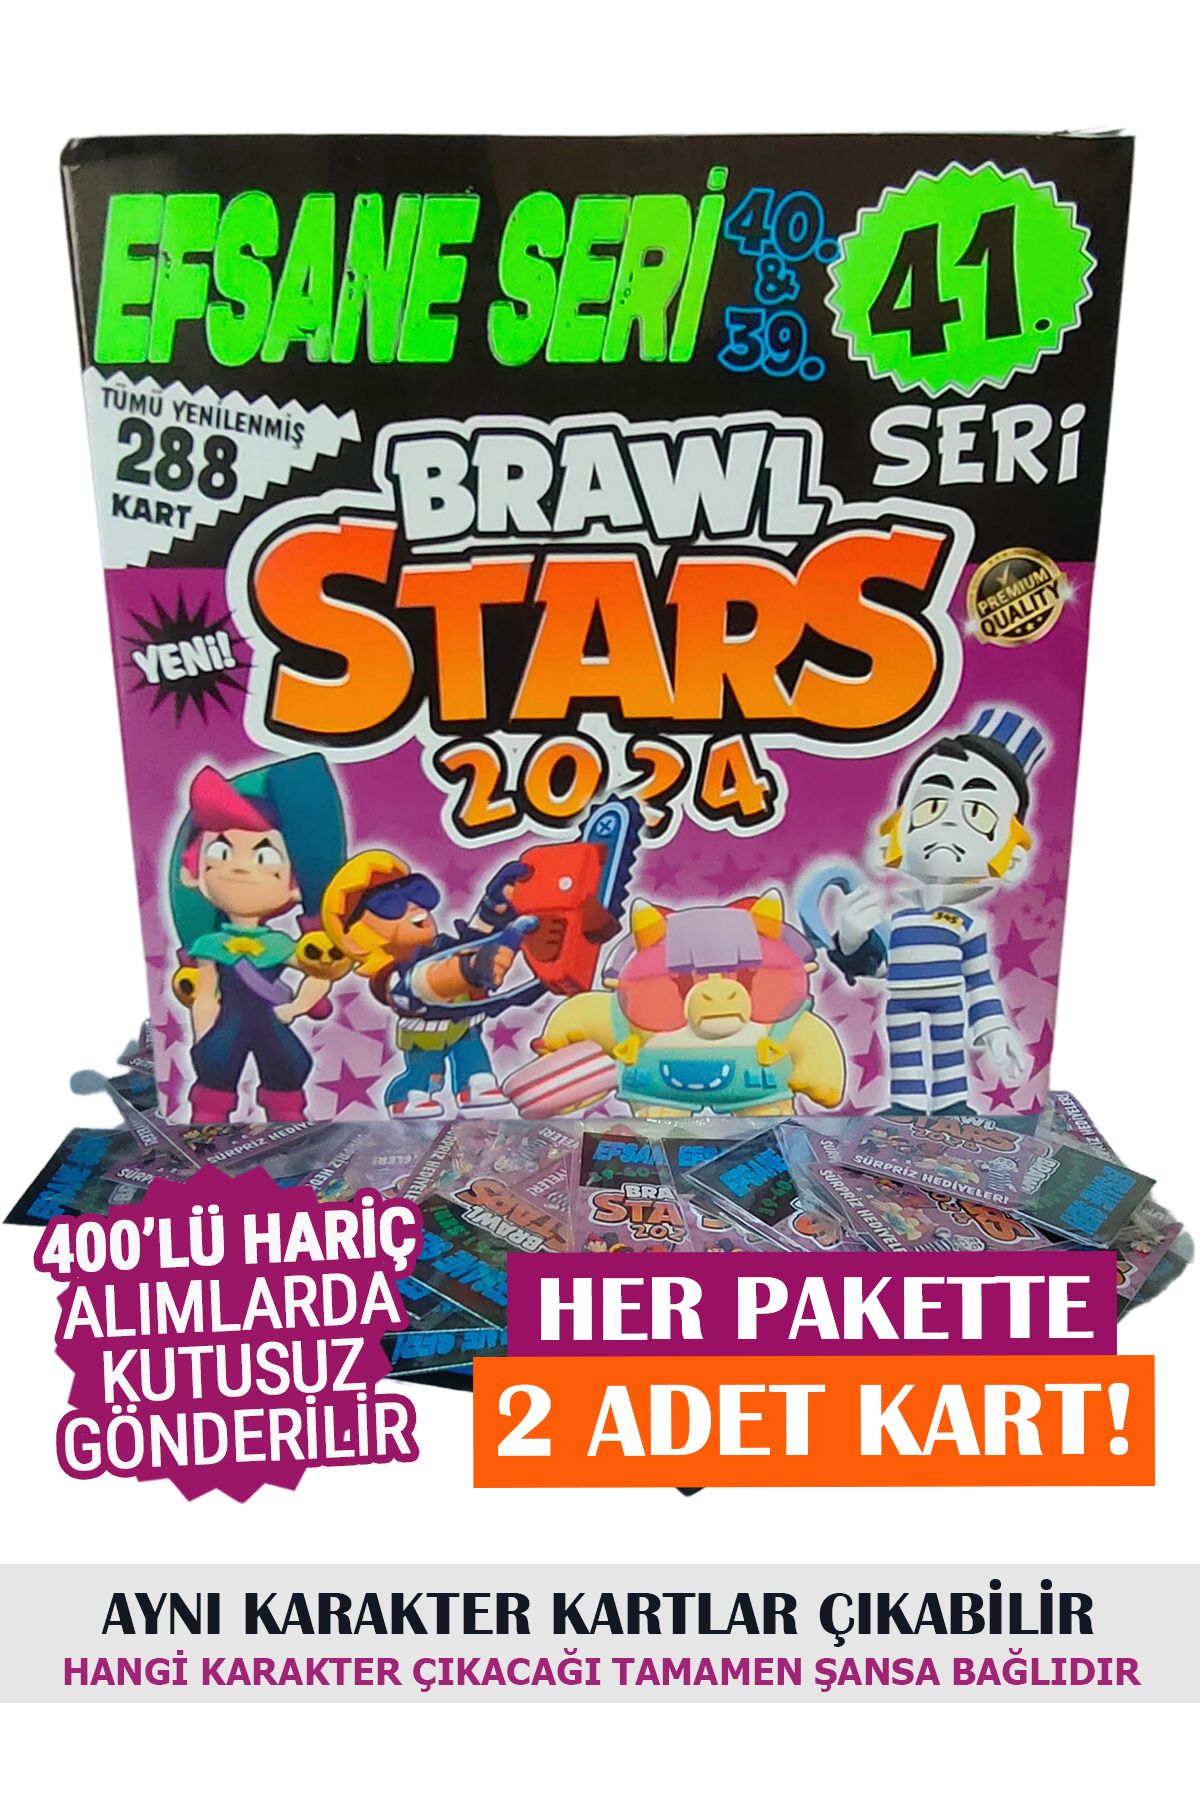 BRAWL STARS 2023 Efsane Seri Oyun Kartları 38.39.40.seri 50 Adet & Kutusuz